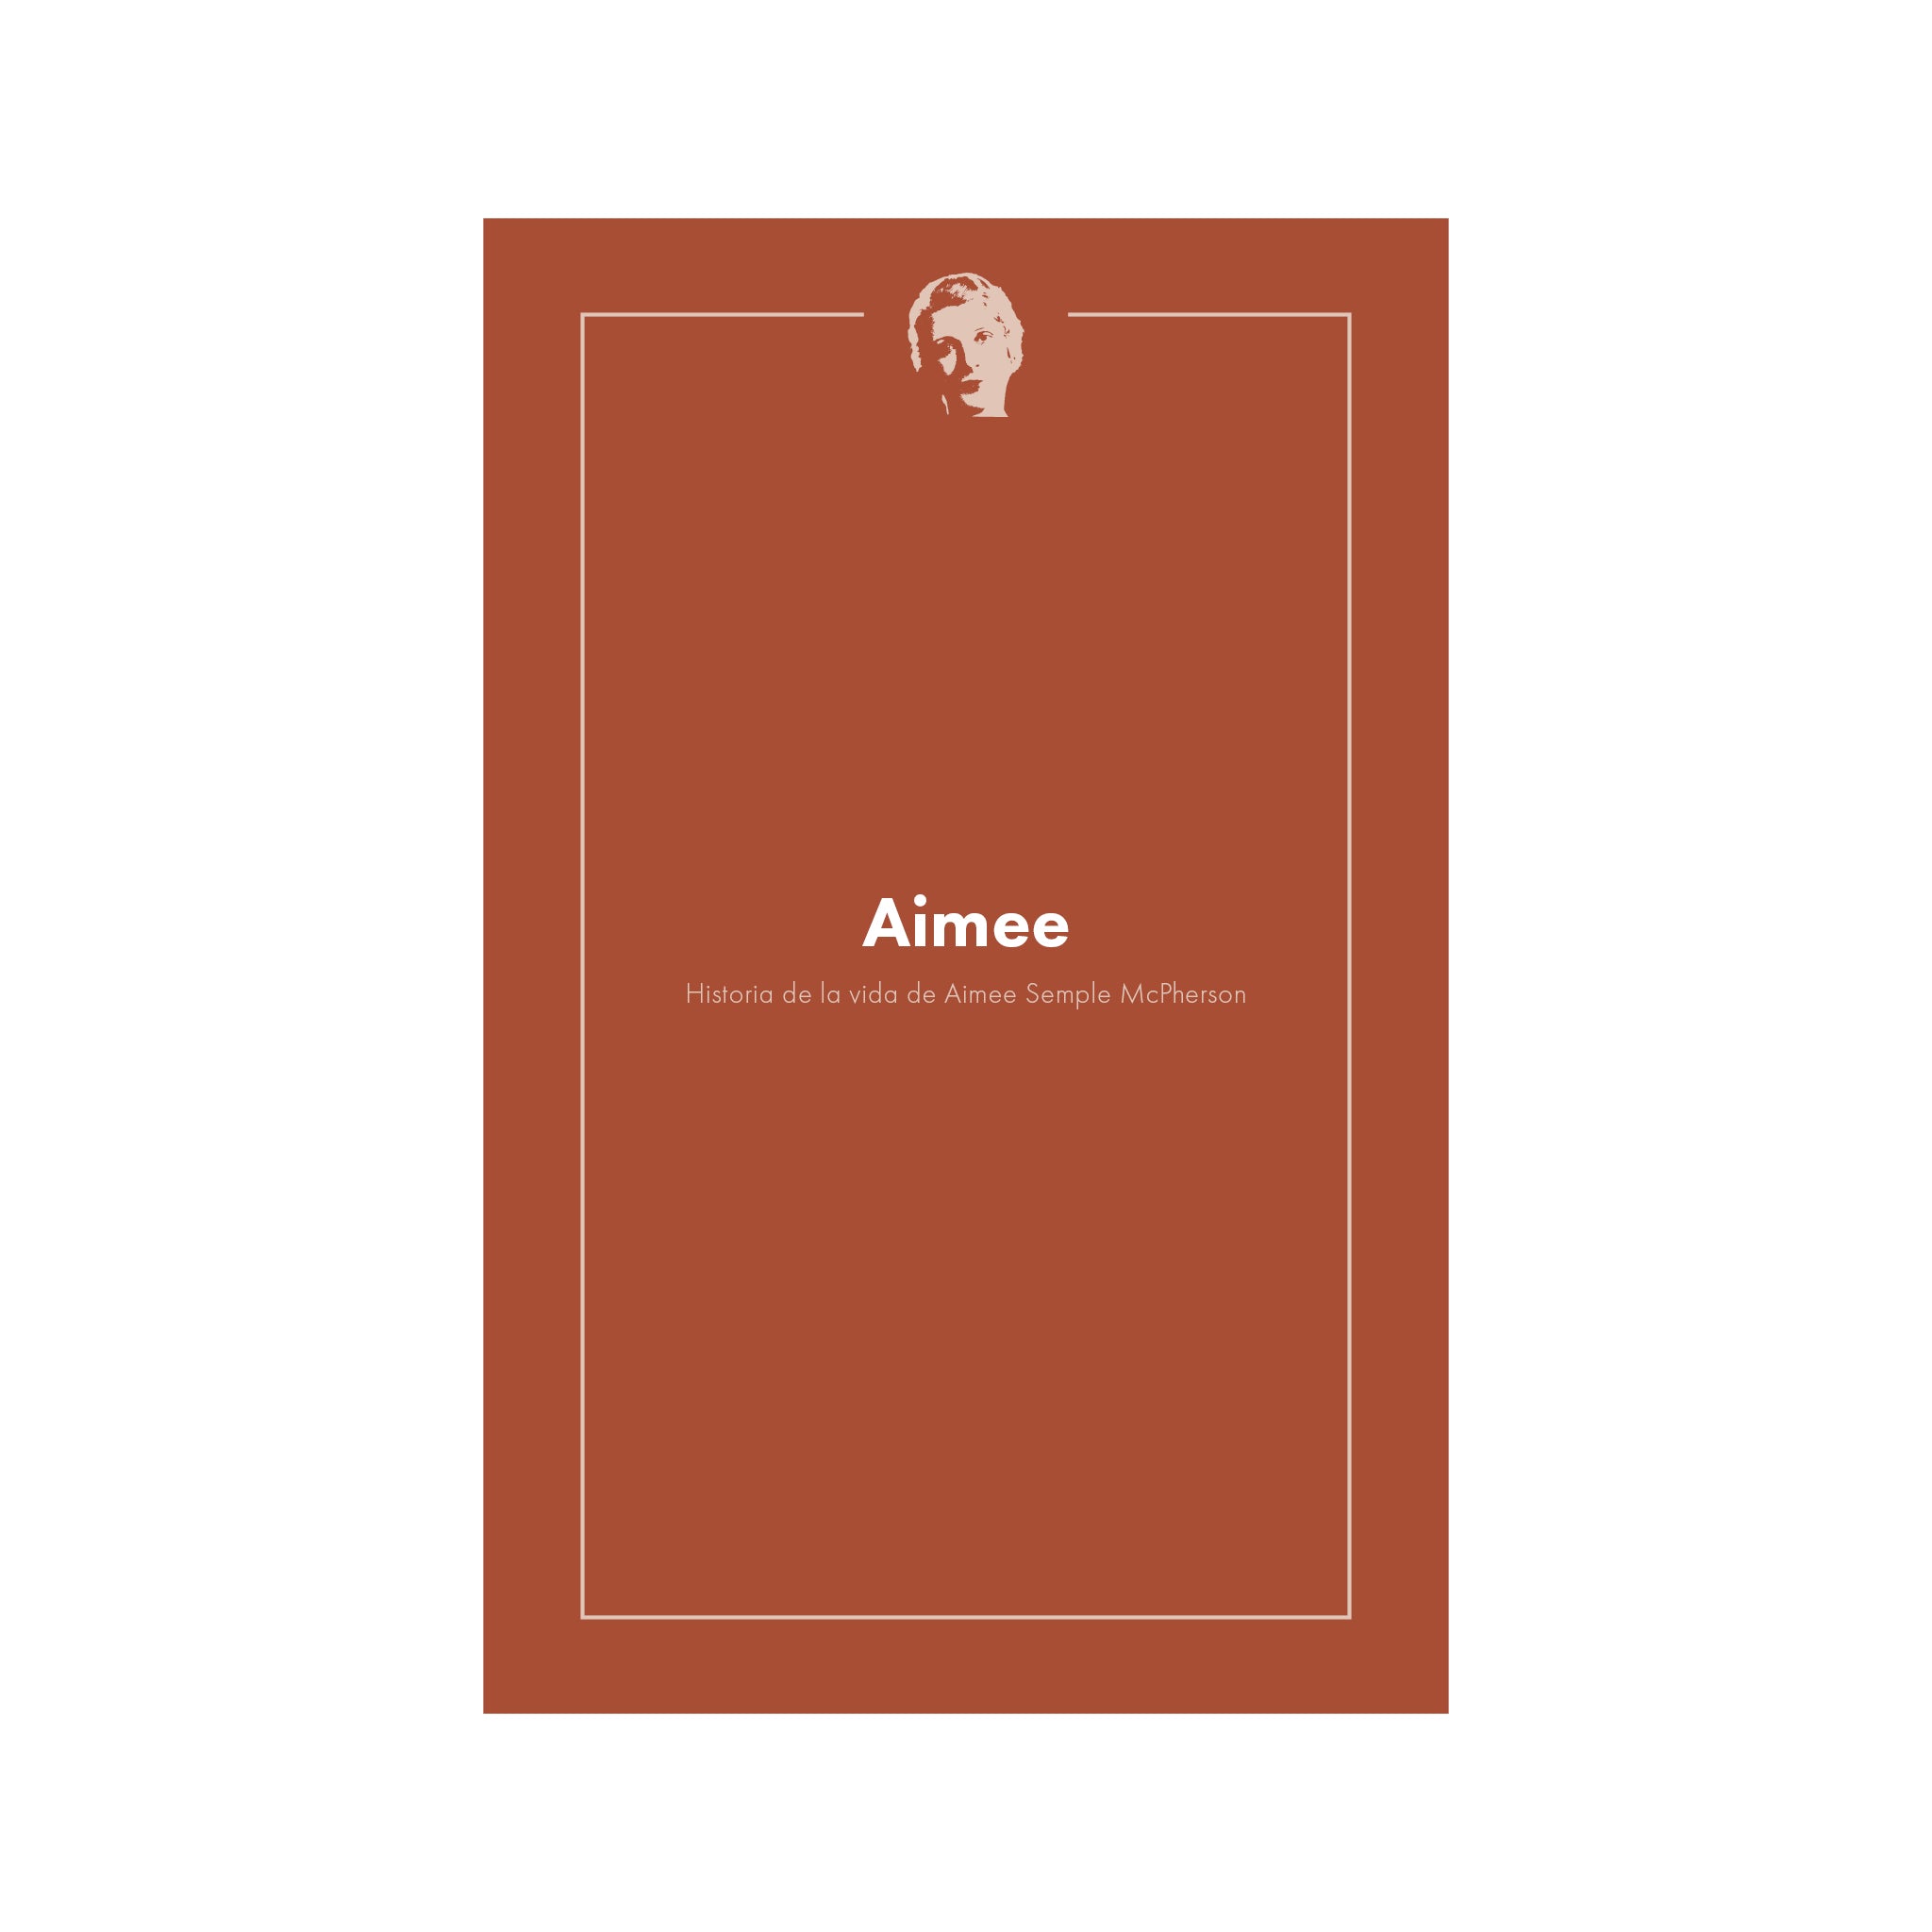 Aimee: Historia de la Vida de Aimee Semple McPherson